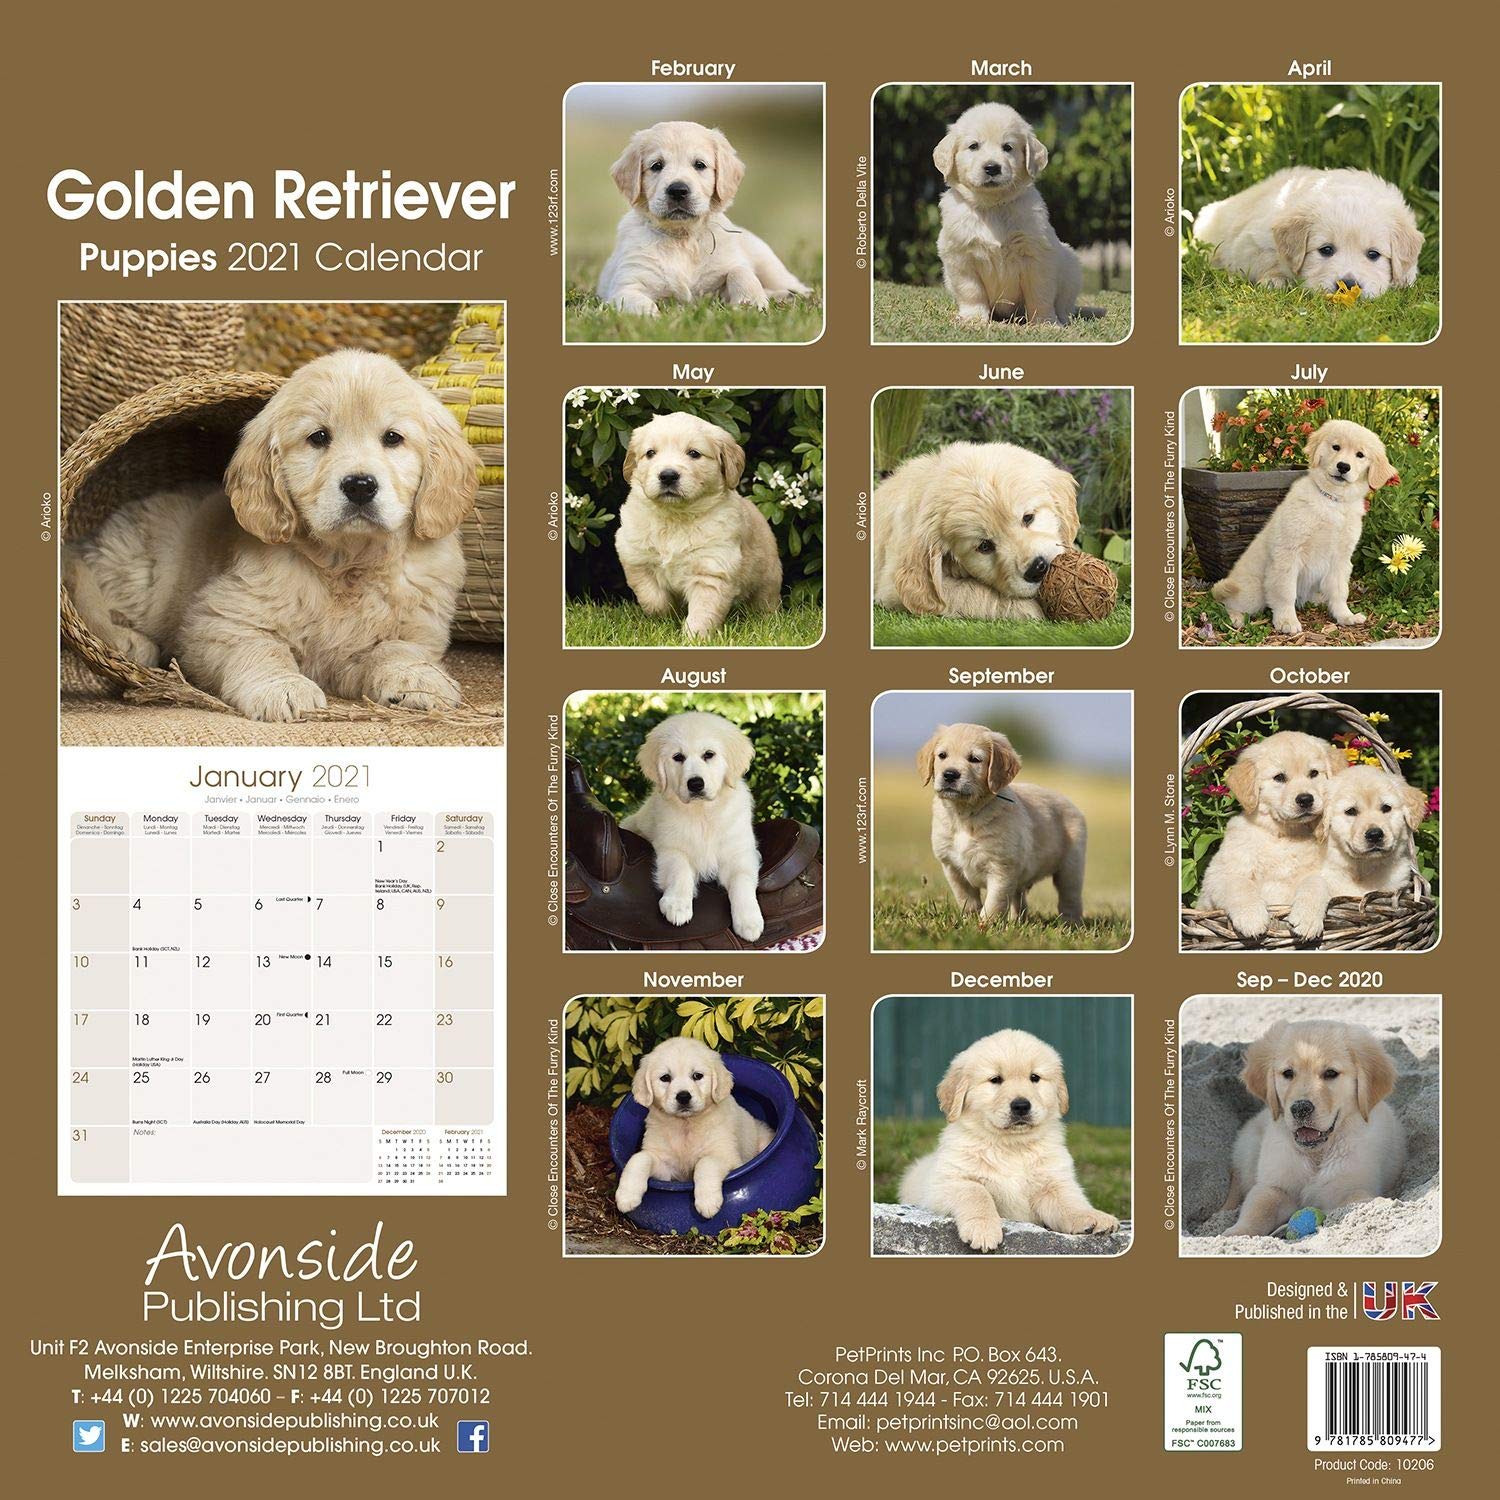 golden-retriever-puppies-2021-calendar-wall-size-30-x-30-cms-new-ebay